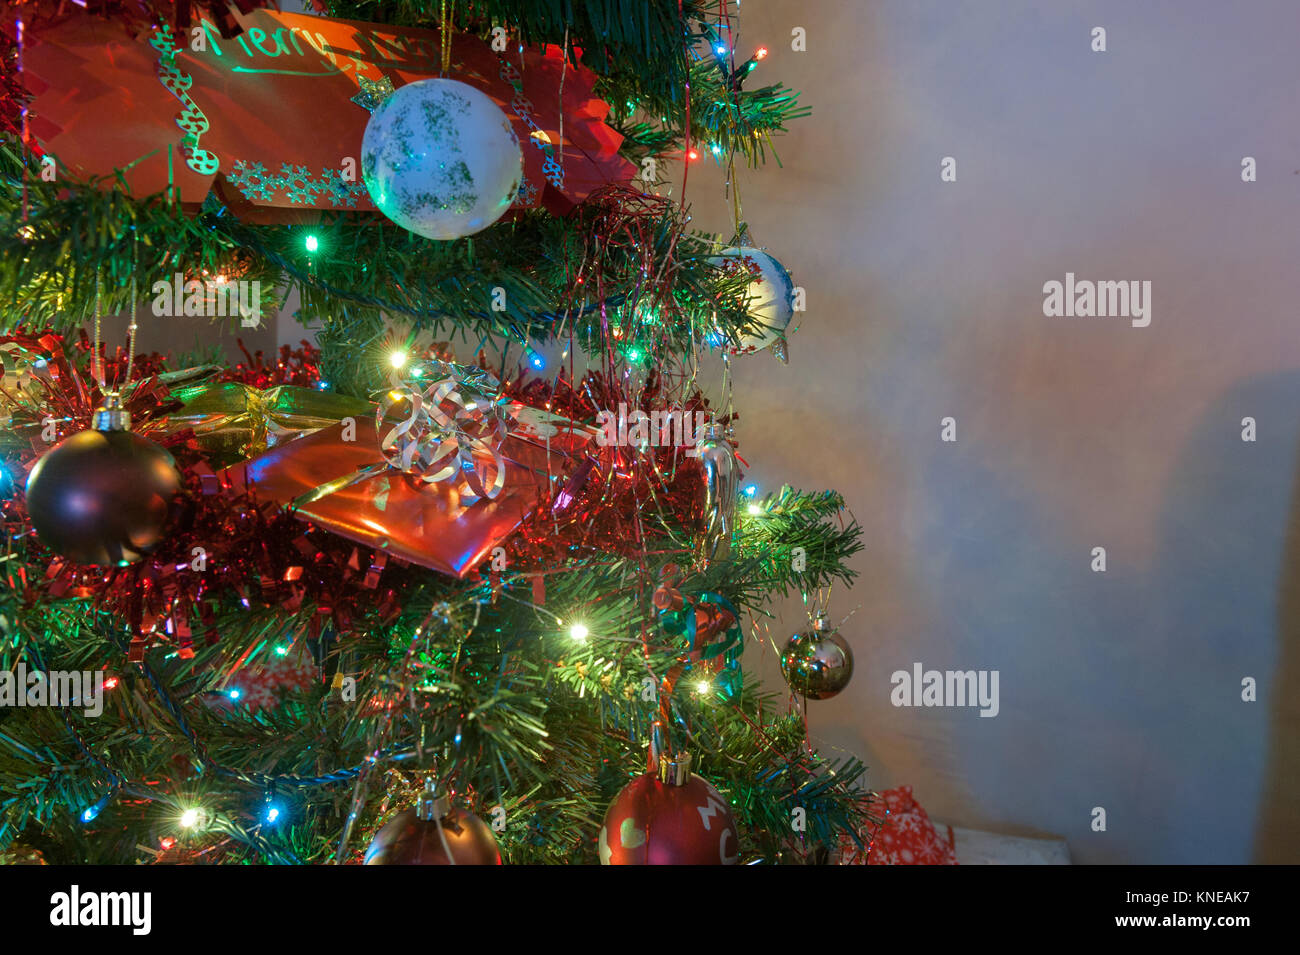 Nahaufnahme von Weihnachtsbaum mit Geschenk in Baum negativ Abstand zur rechten Seite Stockfoto